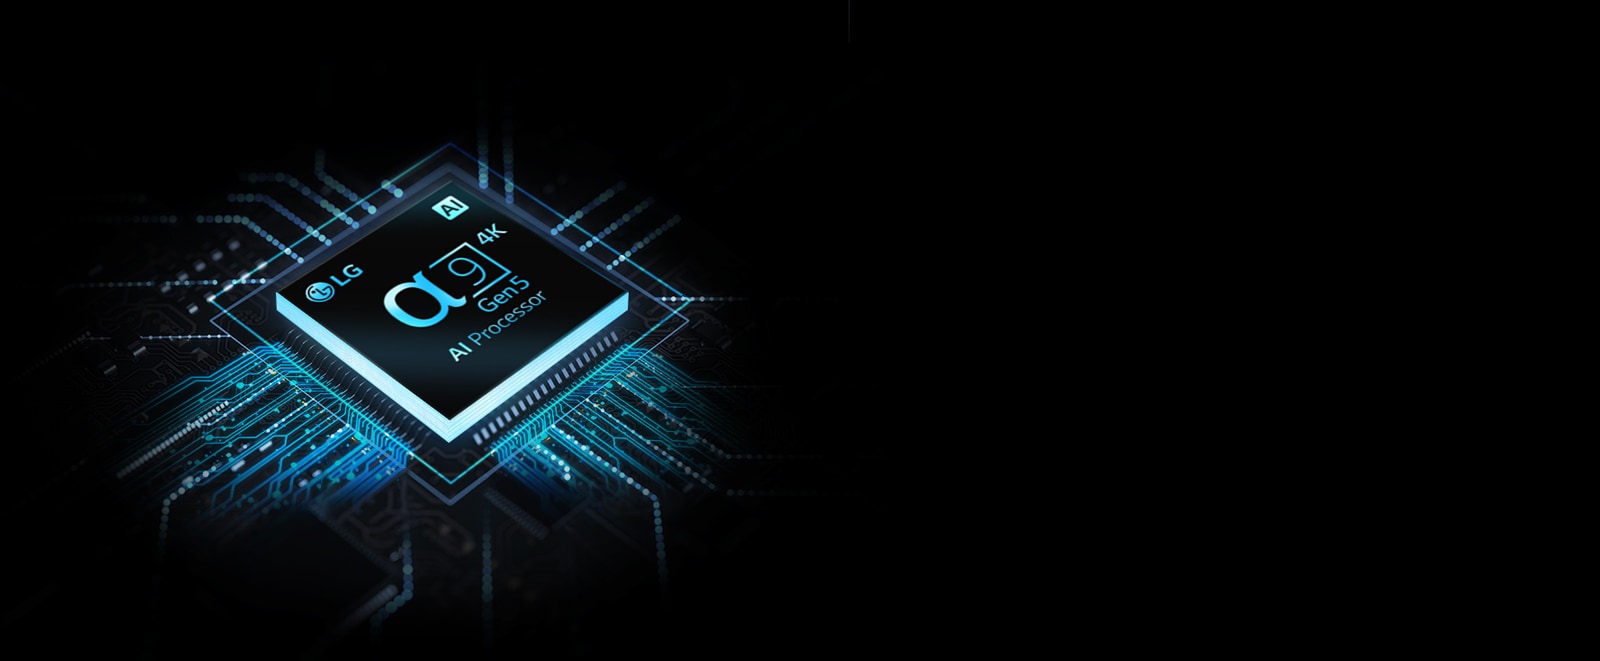 Puce de processeur LG α9 Gen5 AI Processor 4K avec des circuits bleus qui en découlent.